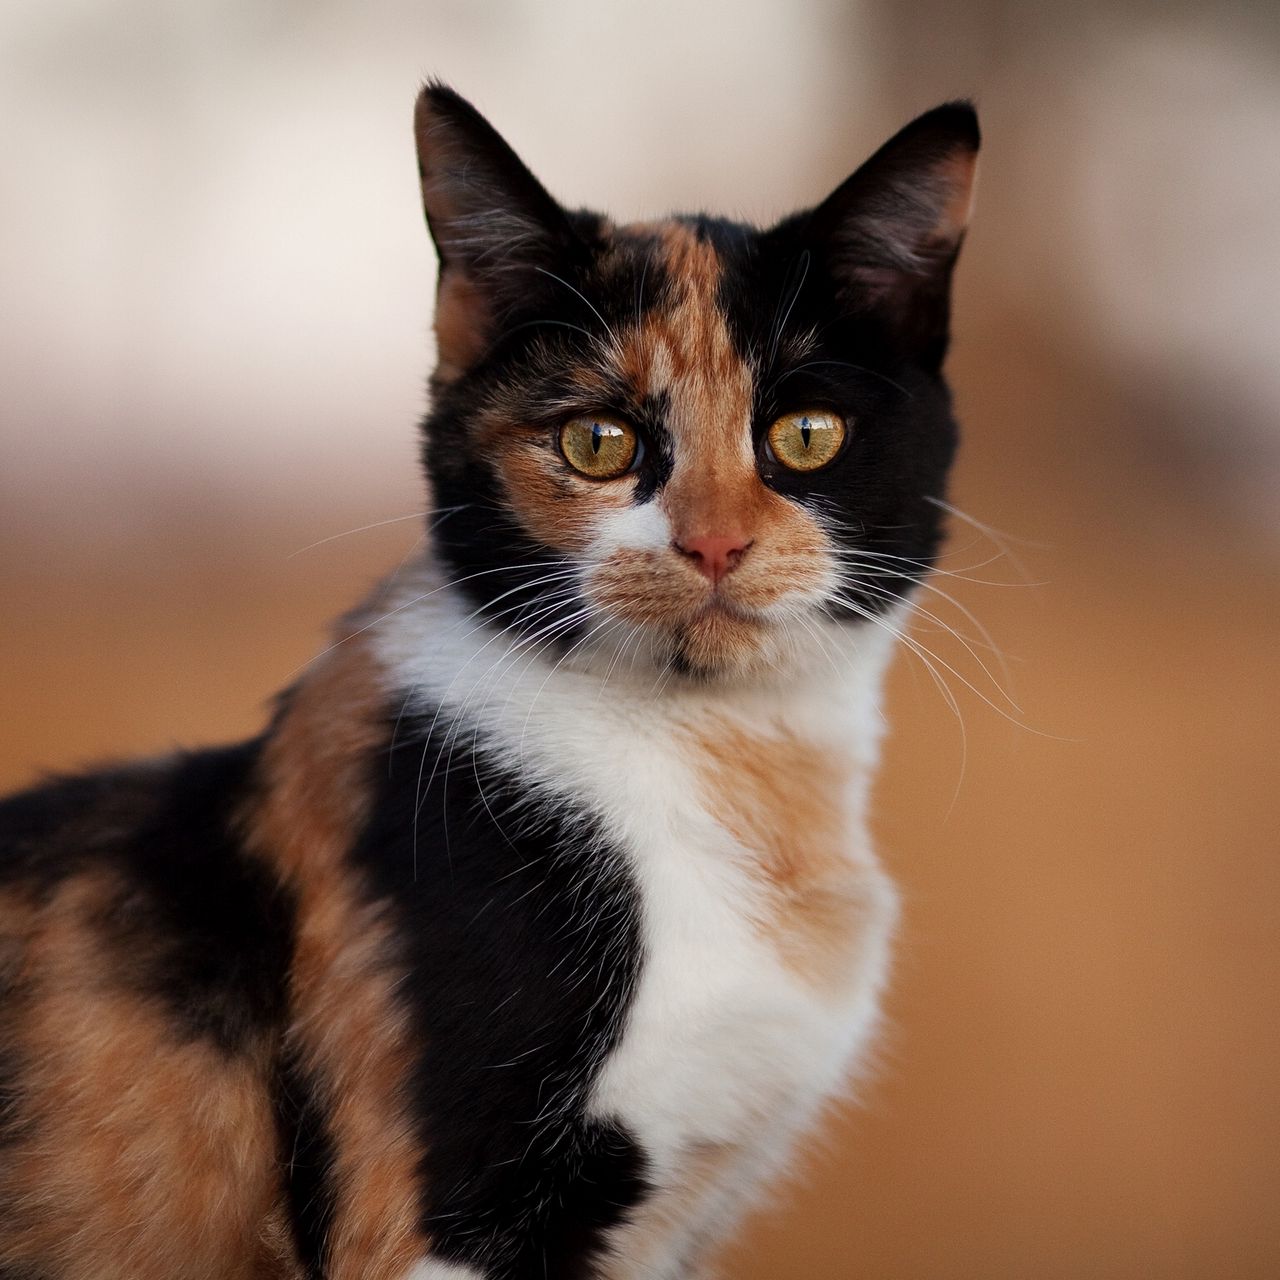 Известно что трехшерстные кошки. Черепаховая кошка Калико. Трехцветная черепаховая кошка. Порода Калико. Трехцветные кошки Калико.